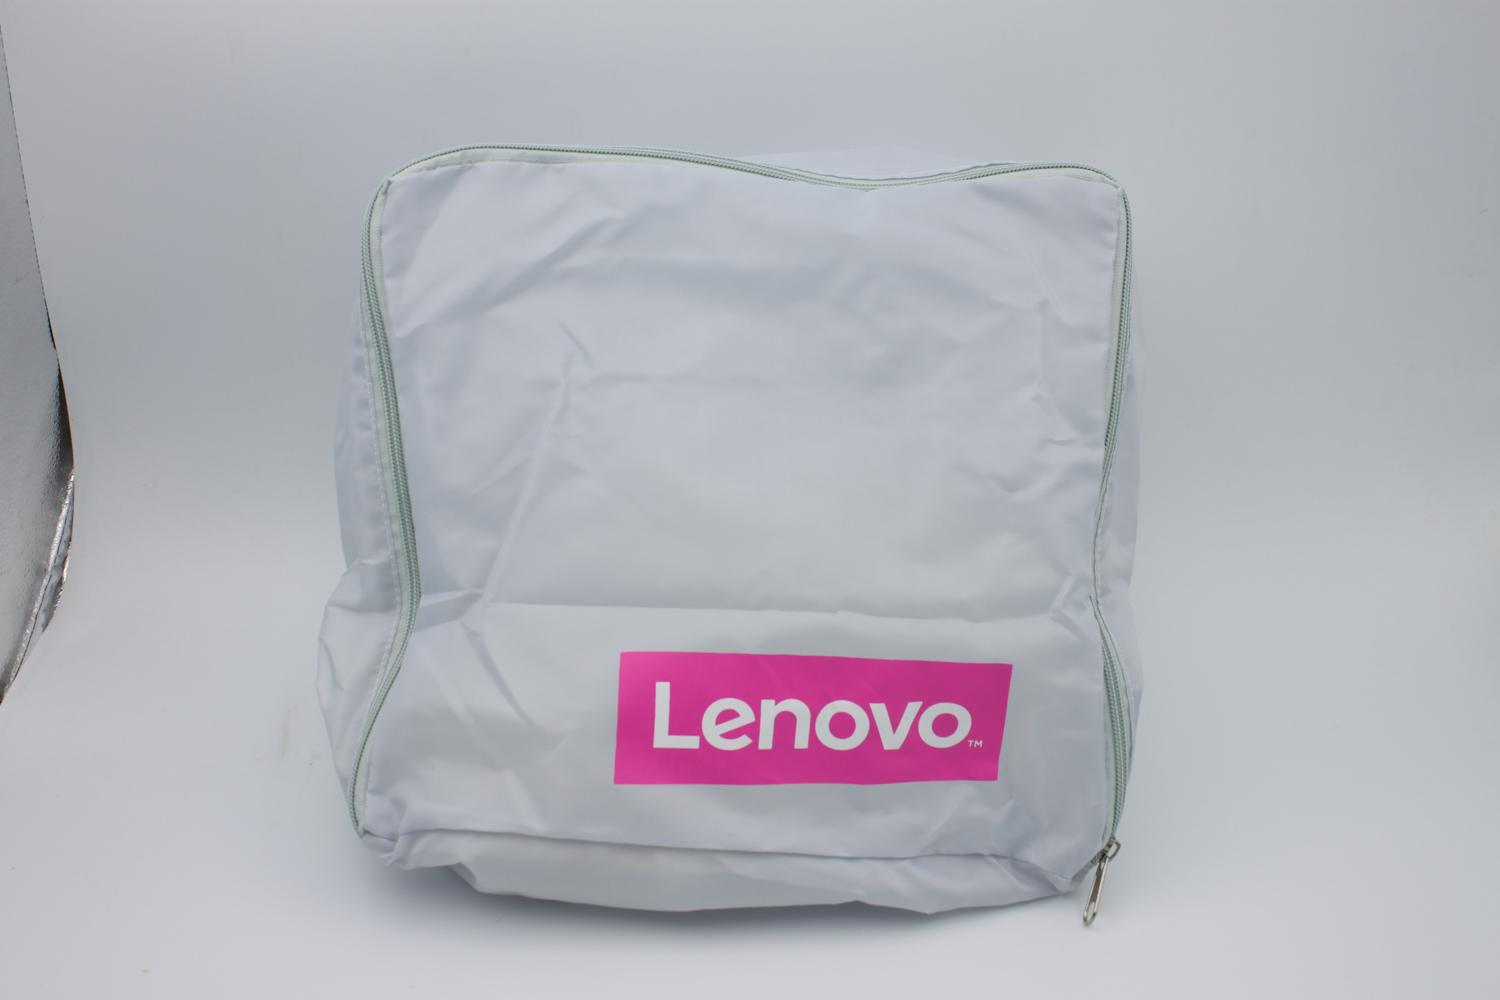 Lenovo Travel Organiser Bag